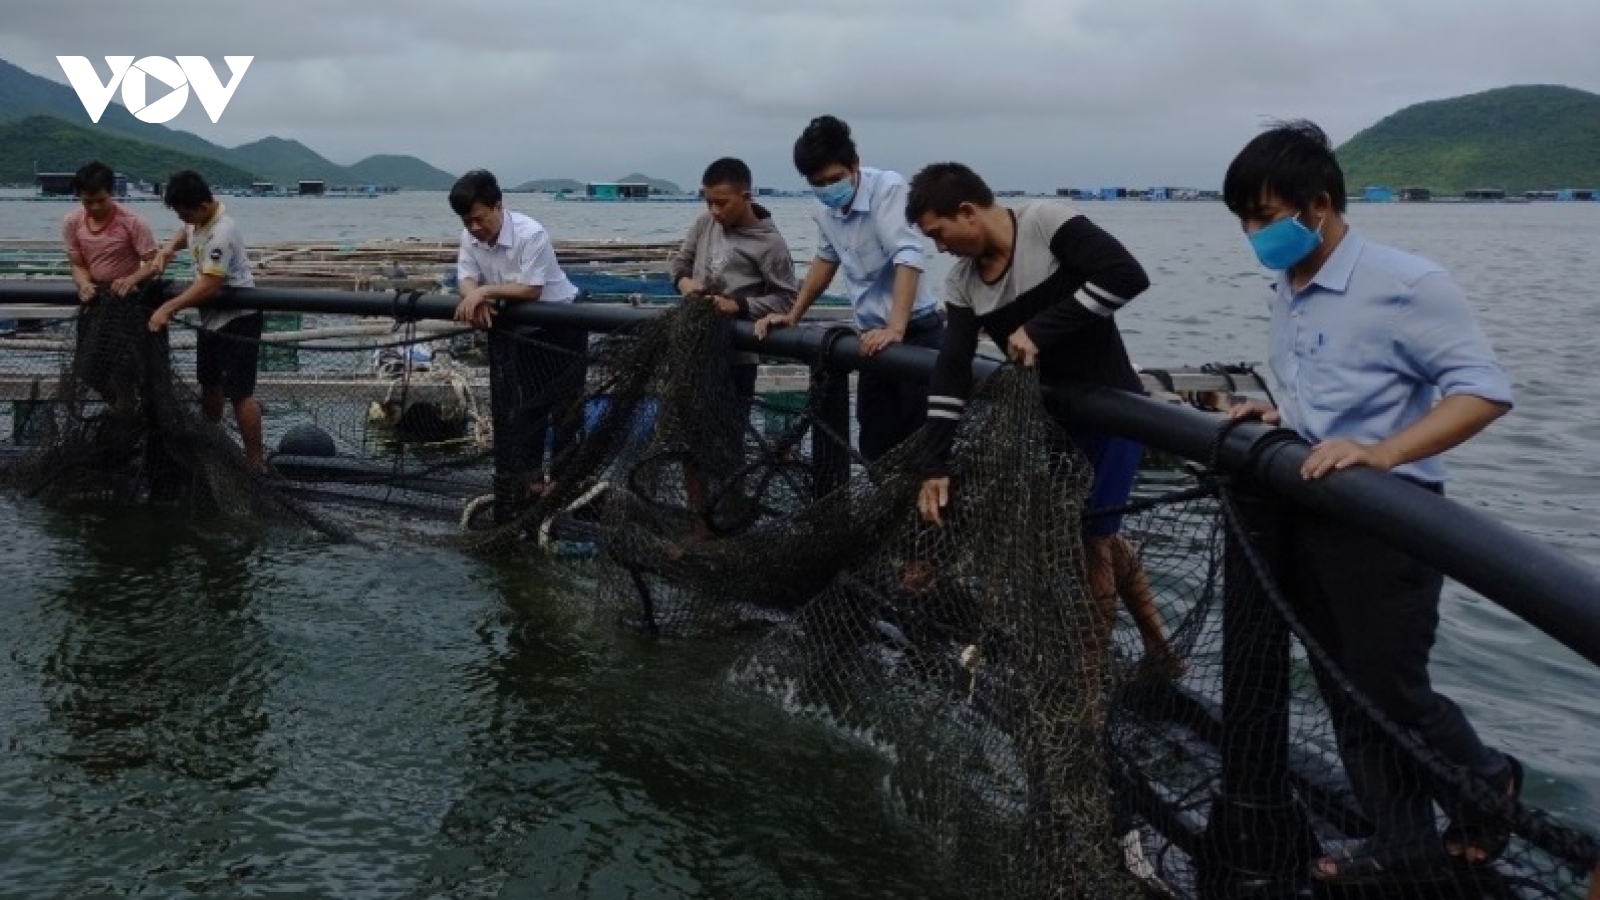 Chuyển đổi công nghệ, hướng đi bền vững cho nuôi hải sản hiện đại ở Khánh Hòa